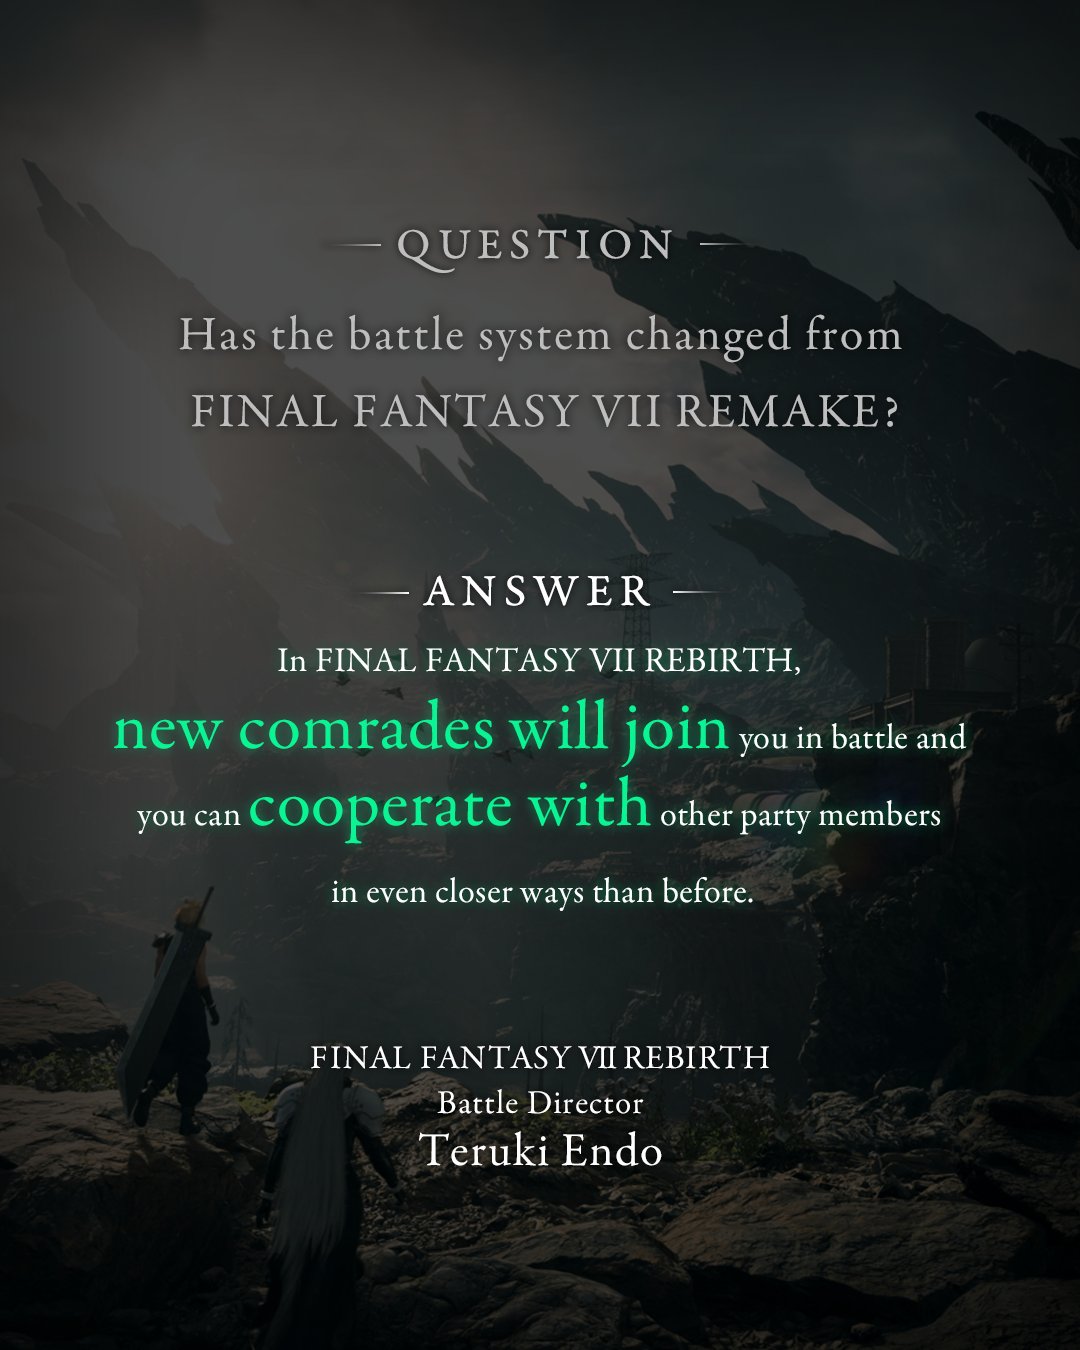 Diretor de combate do Final Fantasy VII Remake espera melhorar a